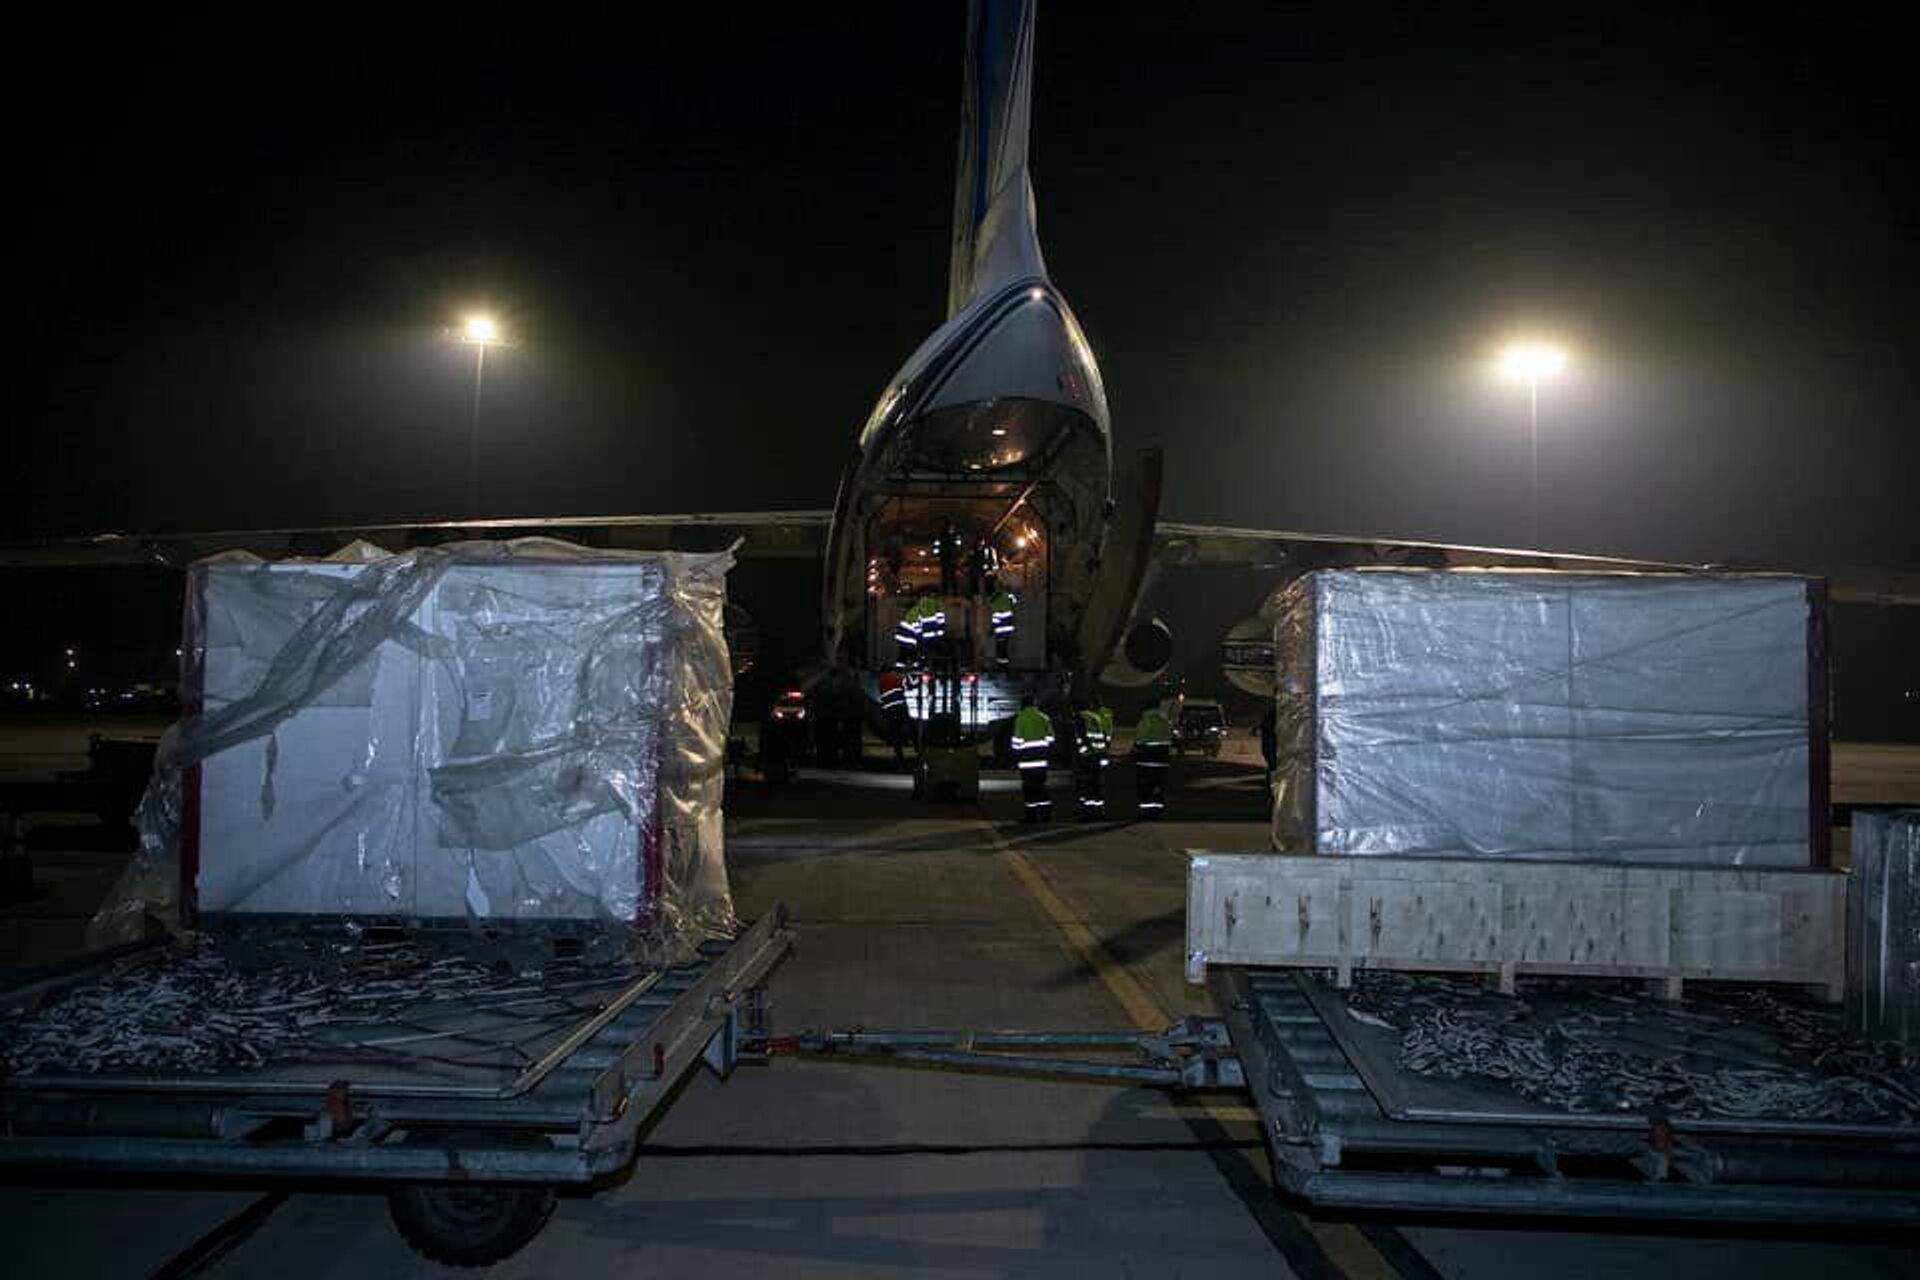 ՀՀ Առողջապահության նախարարության ձեռք բերված 4 թթվածին արտադրող կայան ու 200 թթվածնային կոնցենտրատորները Զվարթնոց օդանավակայանում - Sputnik Արմենիա, 1920, 12.12.2021